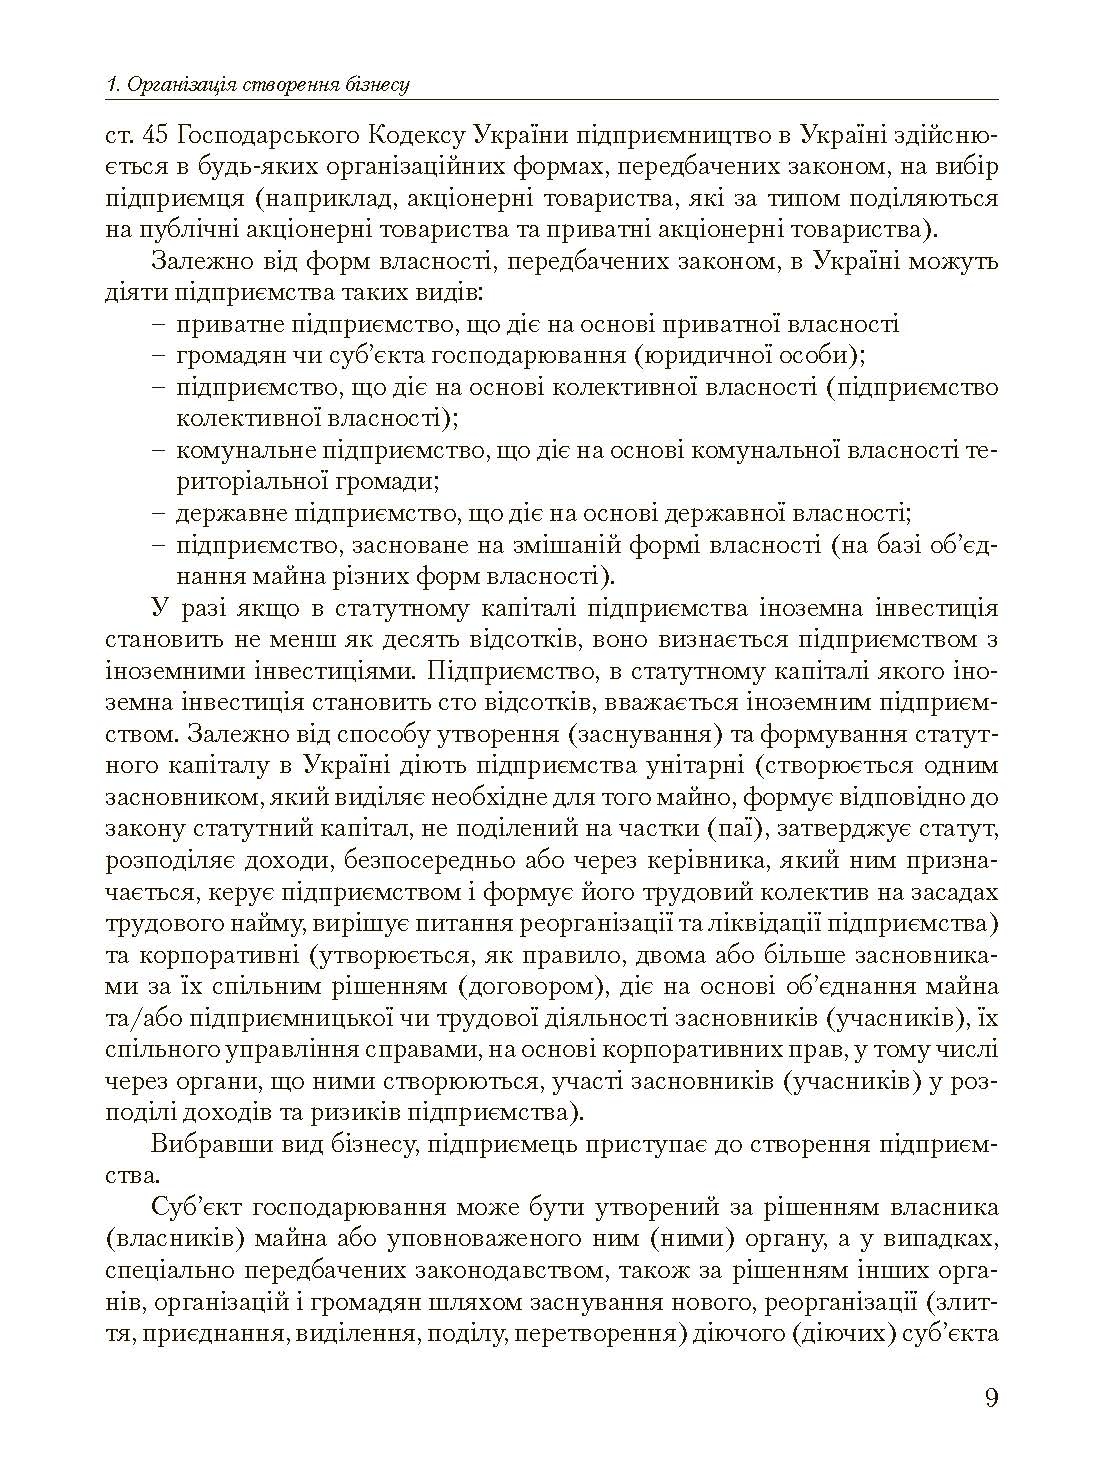 Основи організації бізнесу  (2023 год). Автор — Мельников А.М.. 